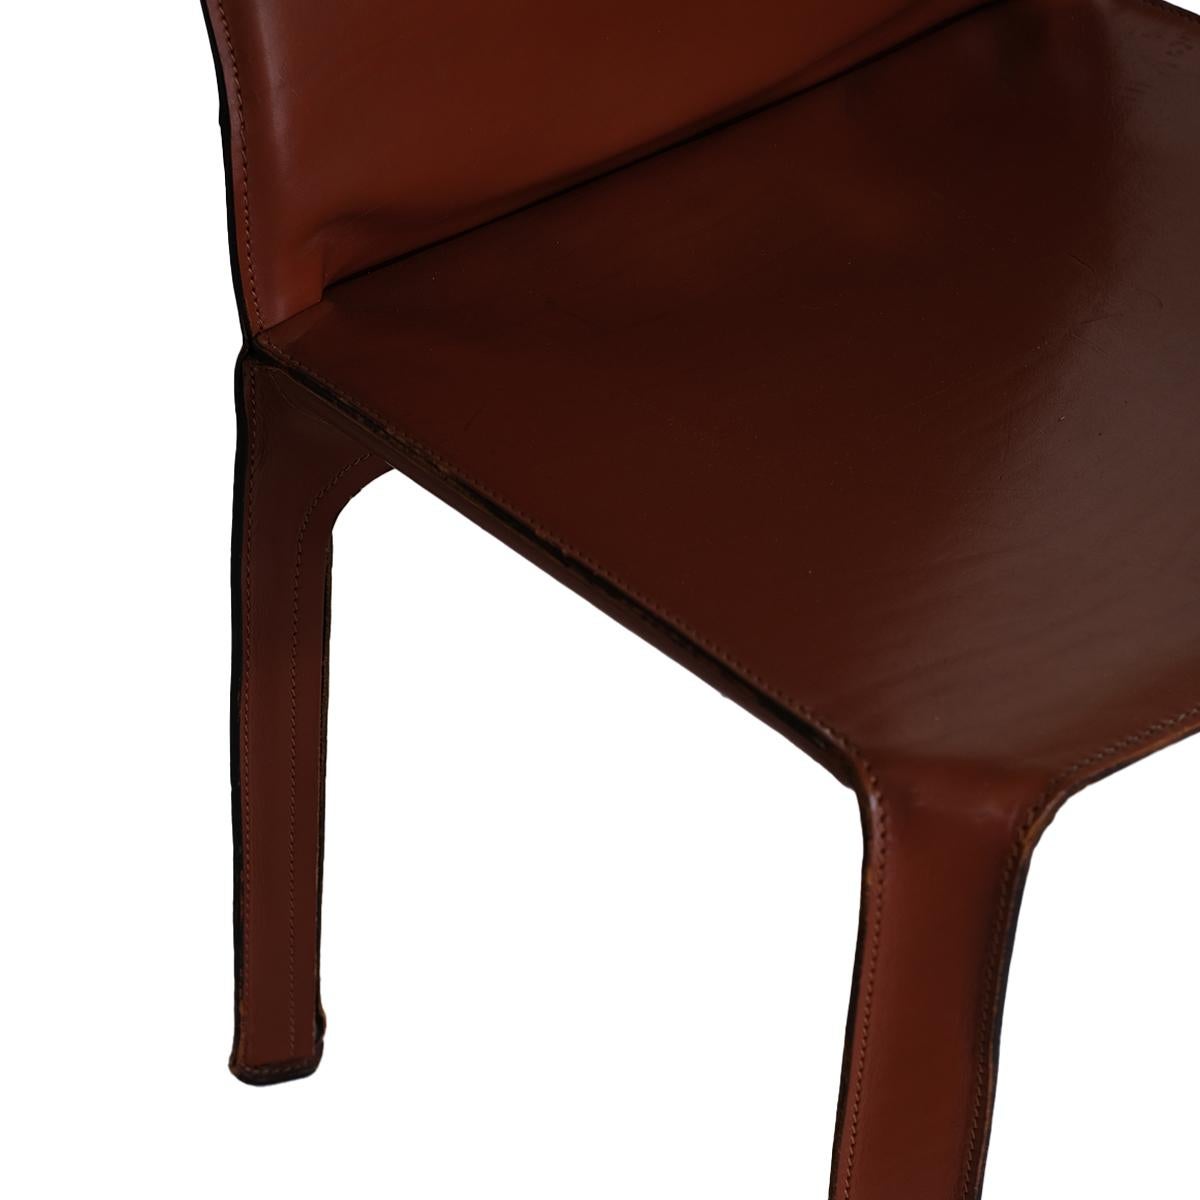 Die Mario Bellini for Cassina CAB 412 Stühle in opulentem Leder: Verschönern Sie Ihren Wohnbereich mit dem Inbegriff italienischer Genialität und Handwerkskunst - den Mario Bellini Cassina CAB 412 Sesseln, die mit opulentem Leder bezogen sind. Diese